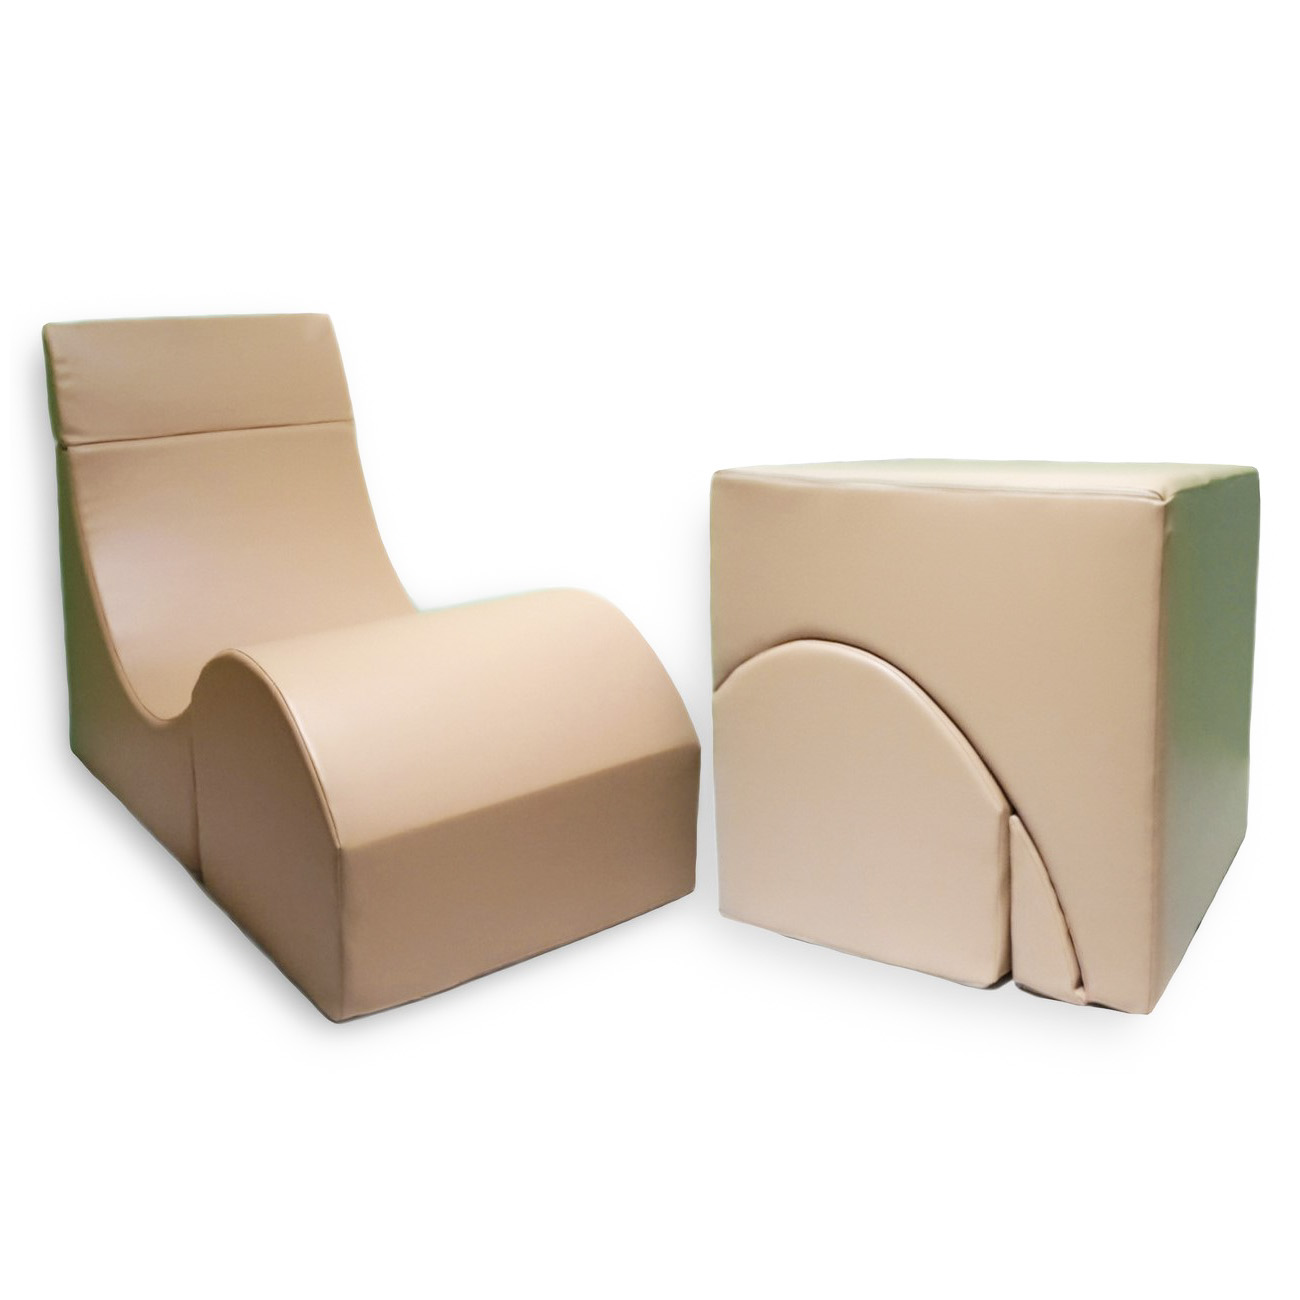 Терапевтическое кресло кубик для взрослых